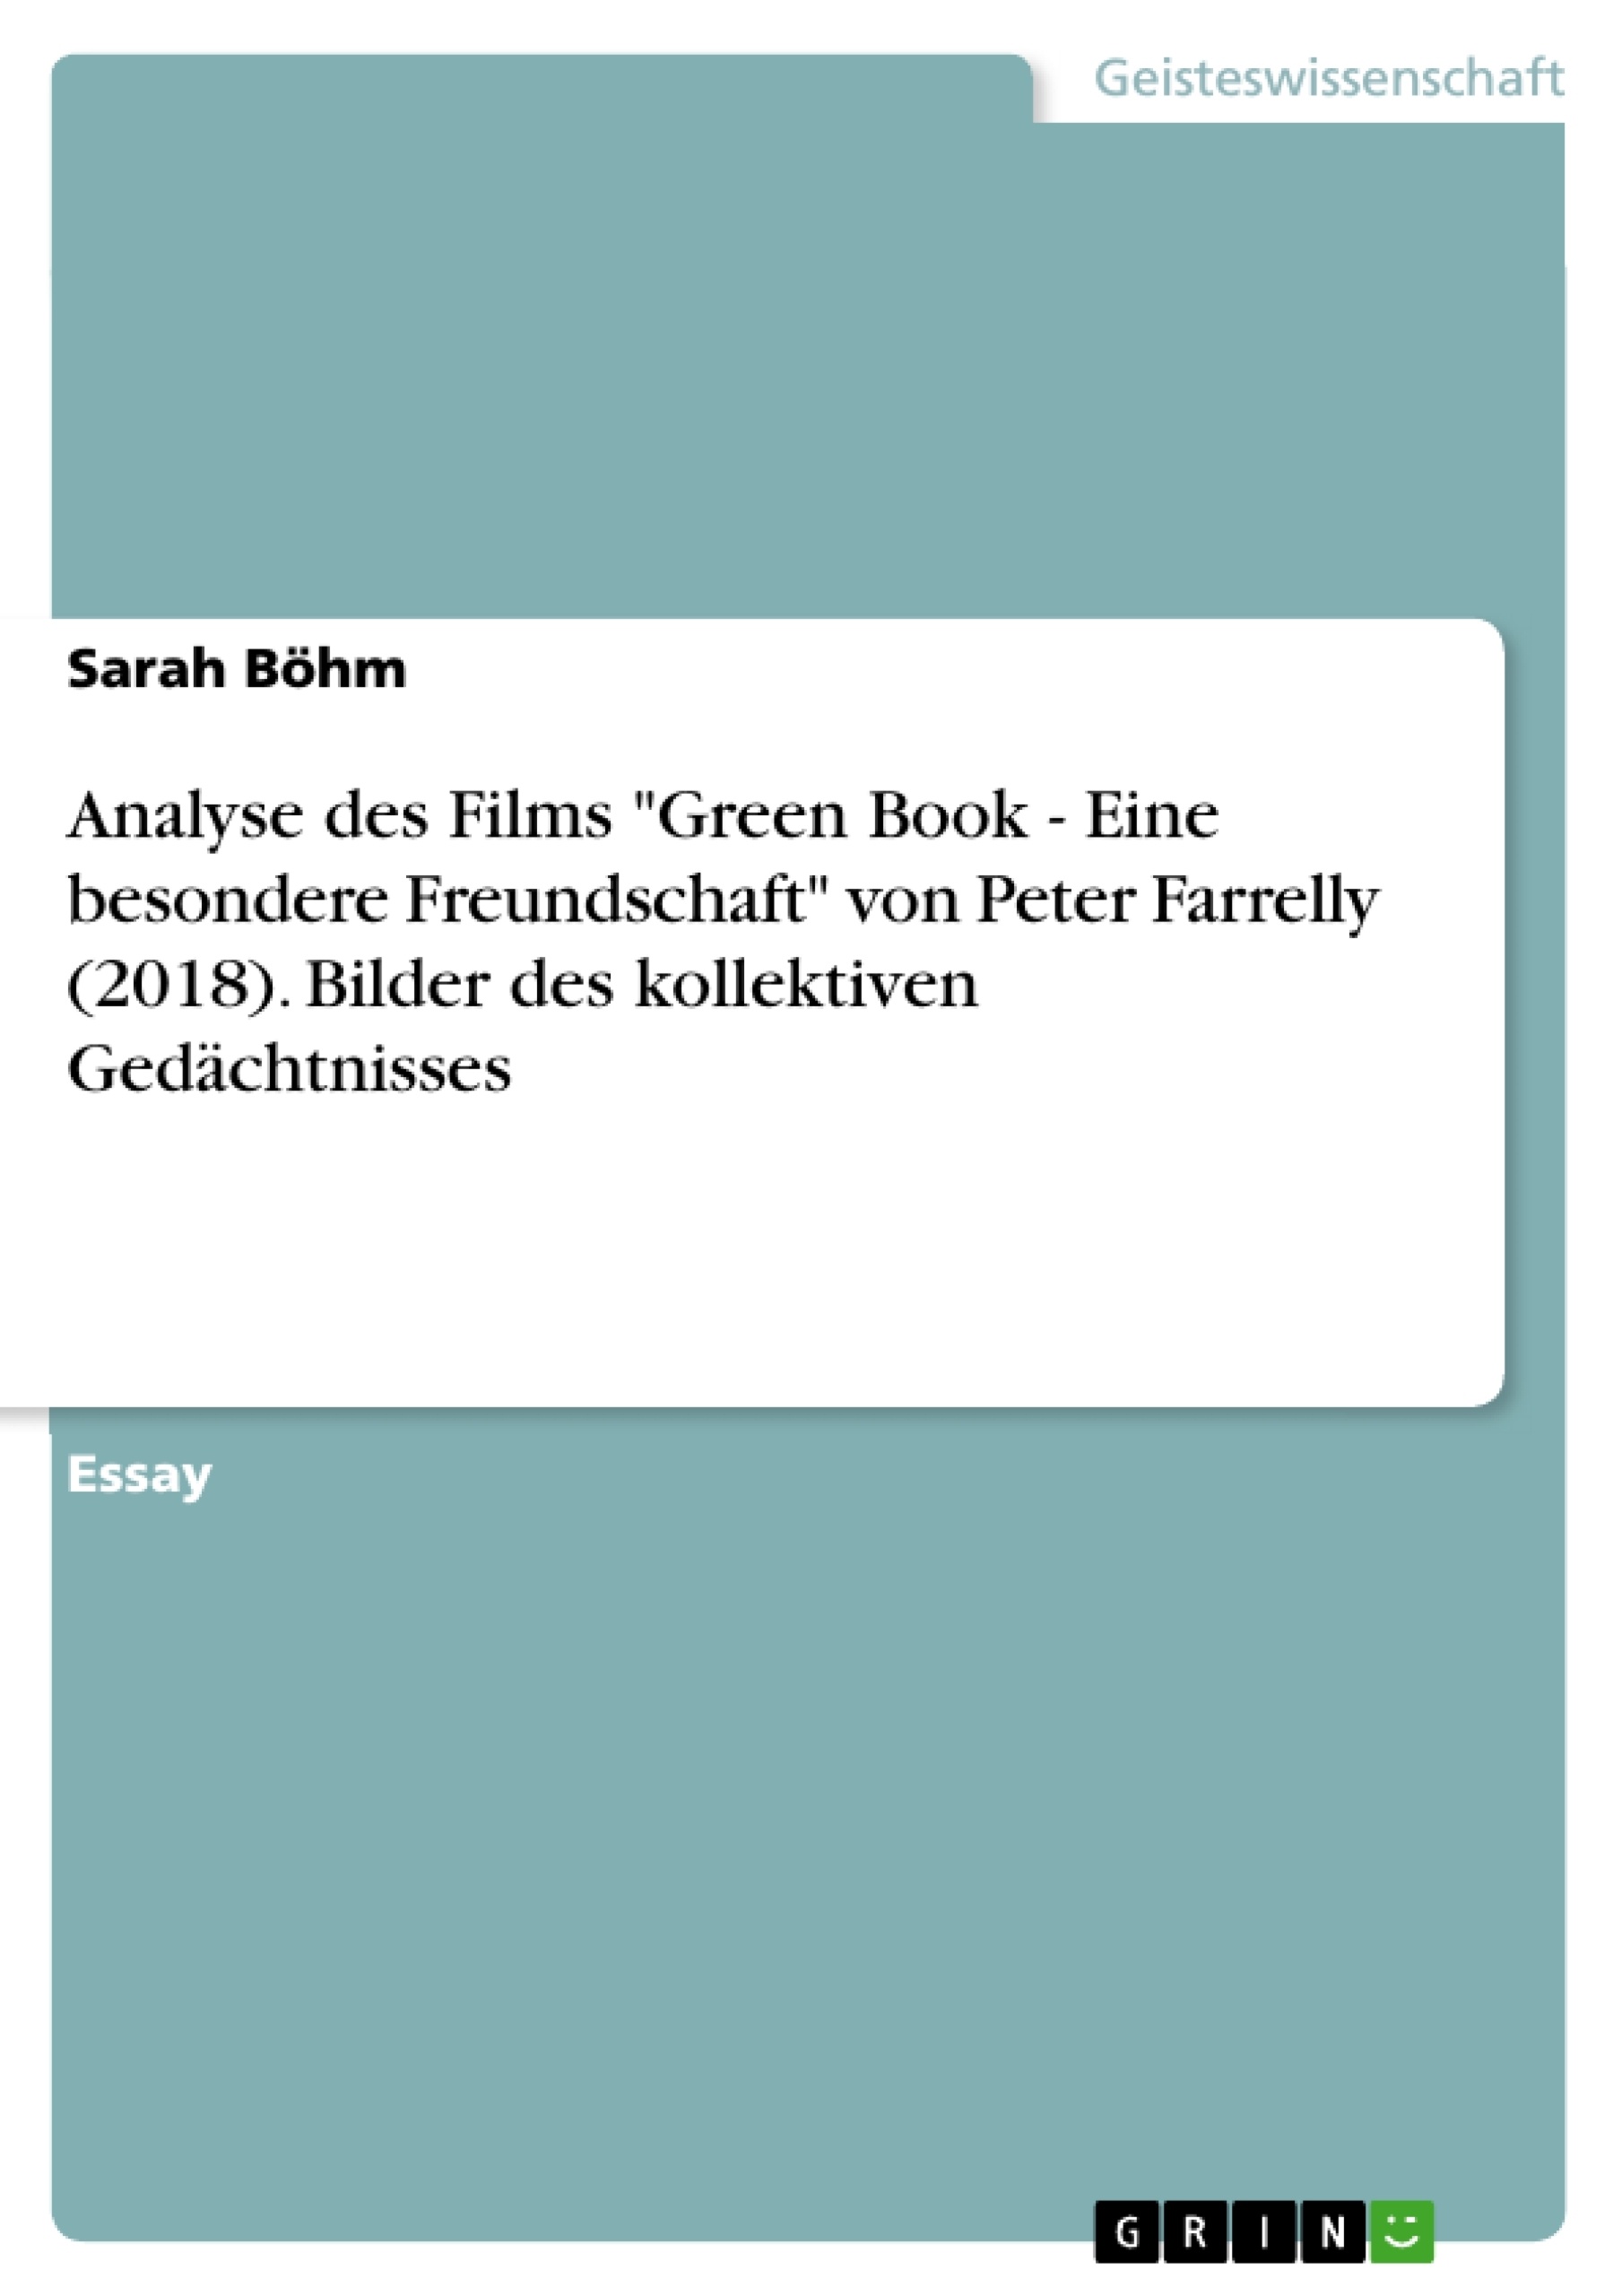 Titre: Analyse des Films "Green Book - Eine besondere Freundschaft" von Peter Farrelly (2018). Bilder des kollektiven Gedächtnisses